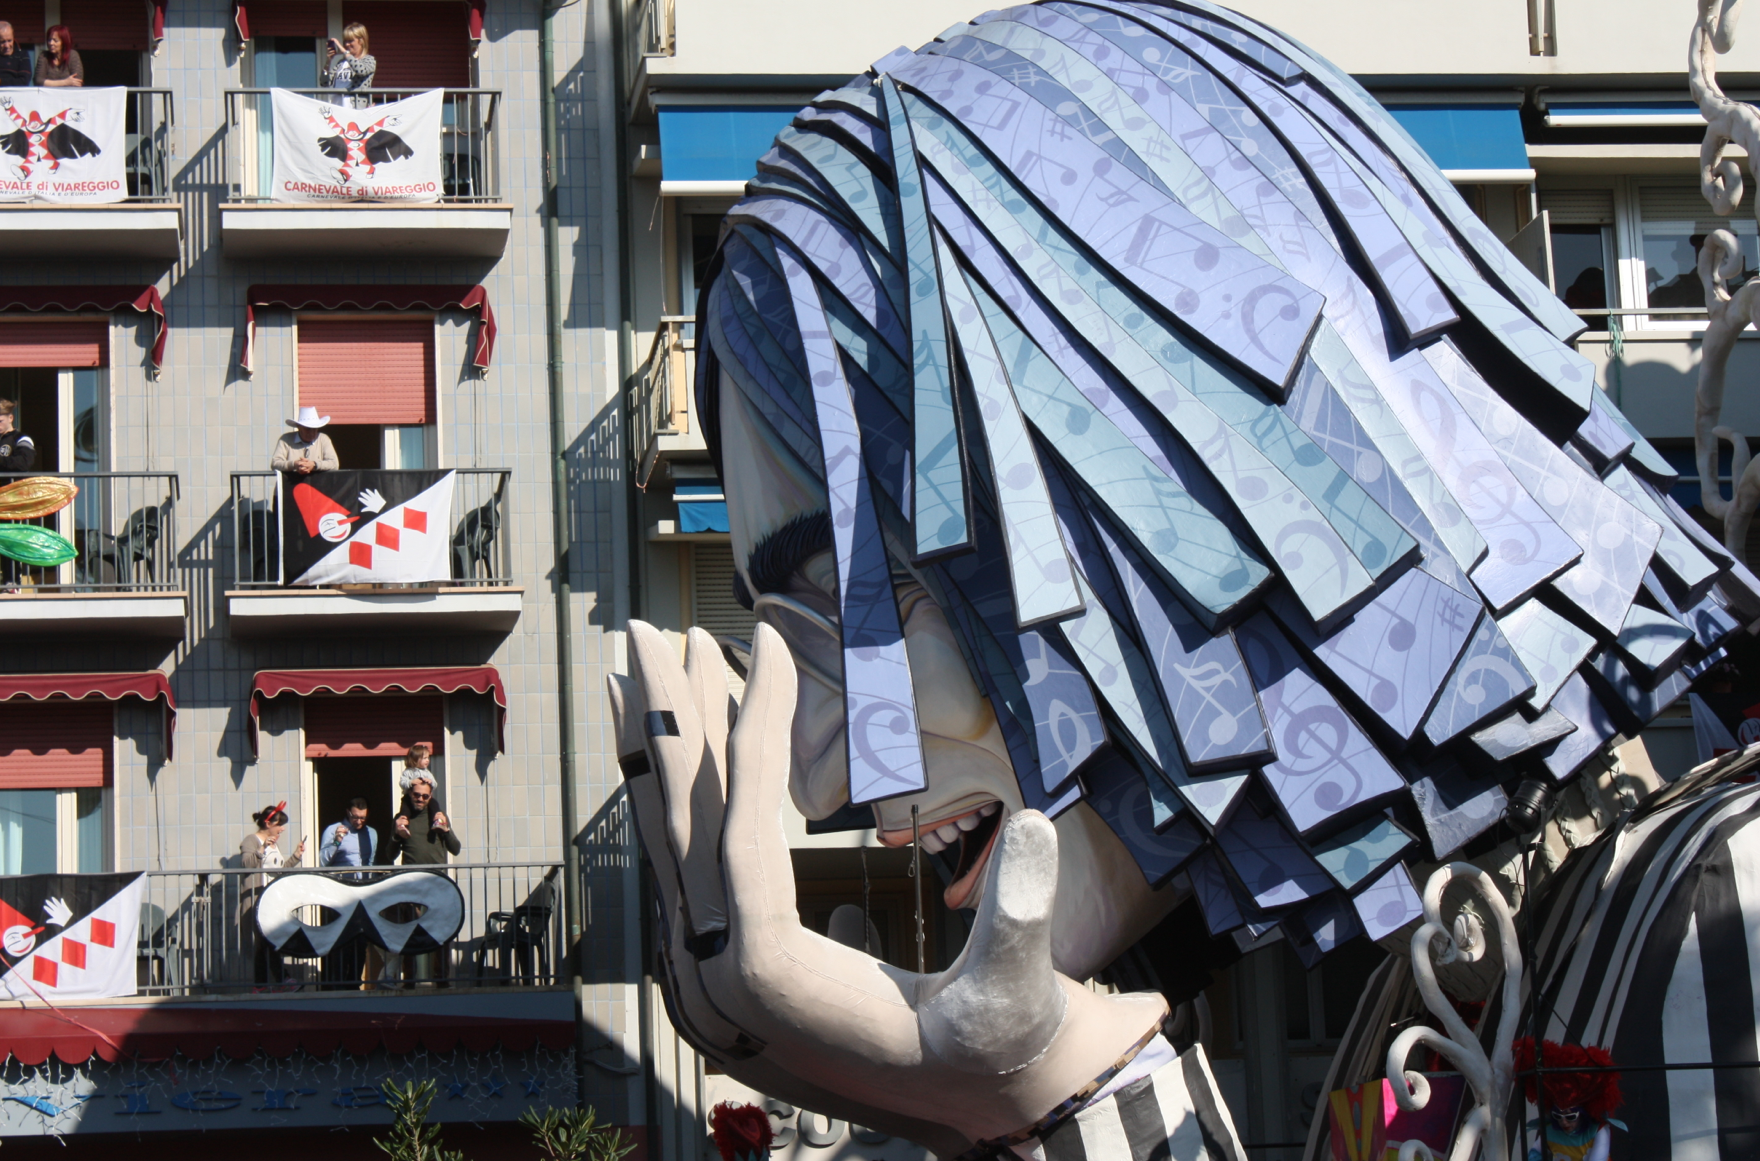 Carnevale di Viareggio 2014, il secondo corso. Le foto della sfilata